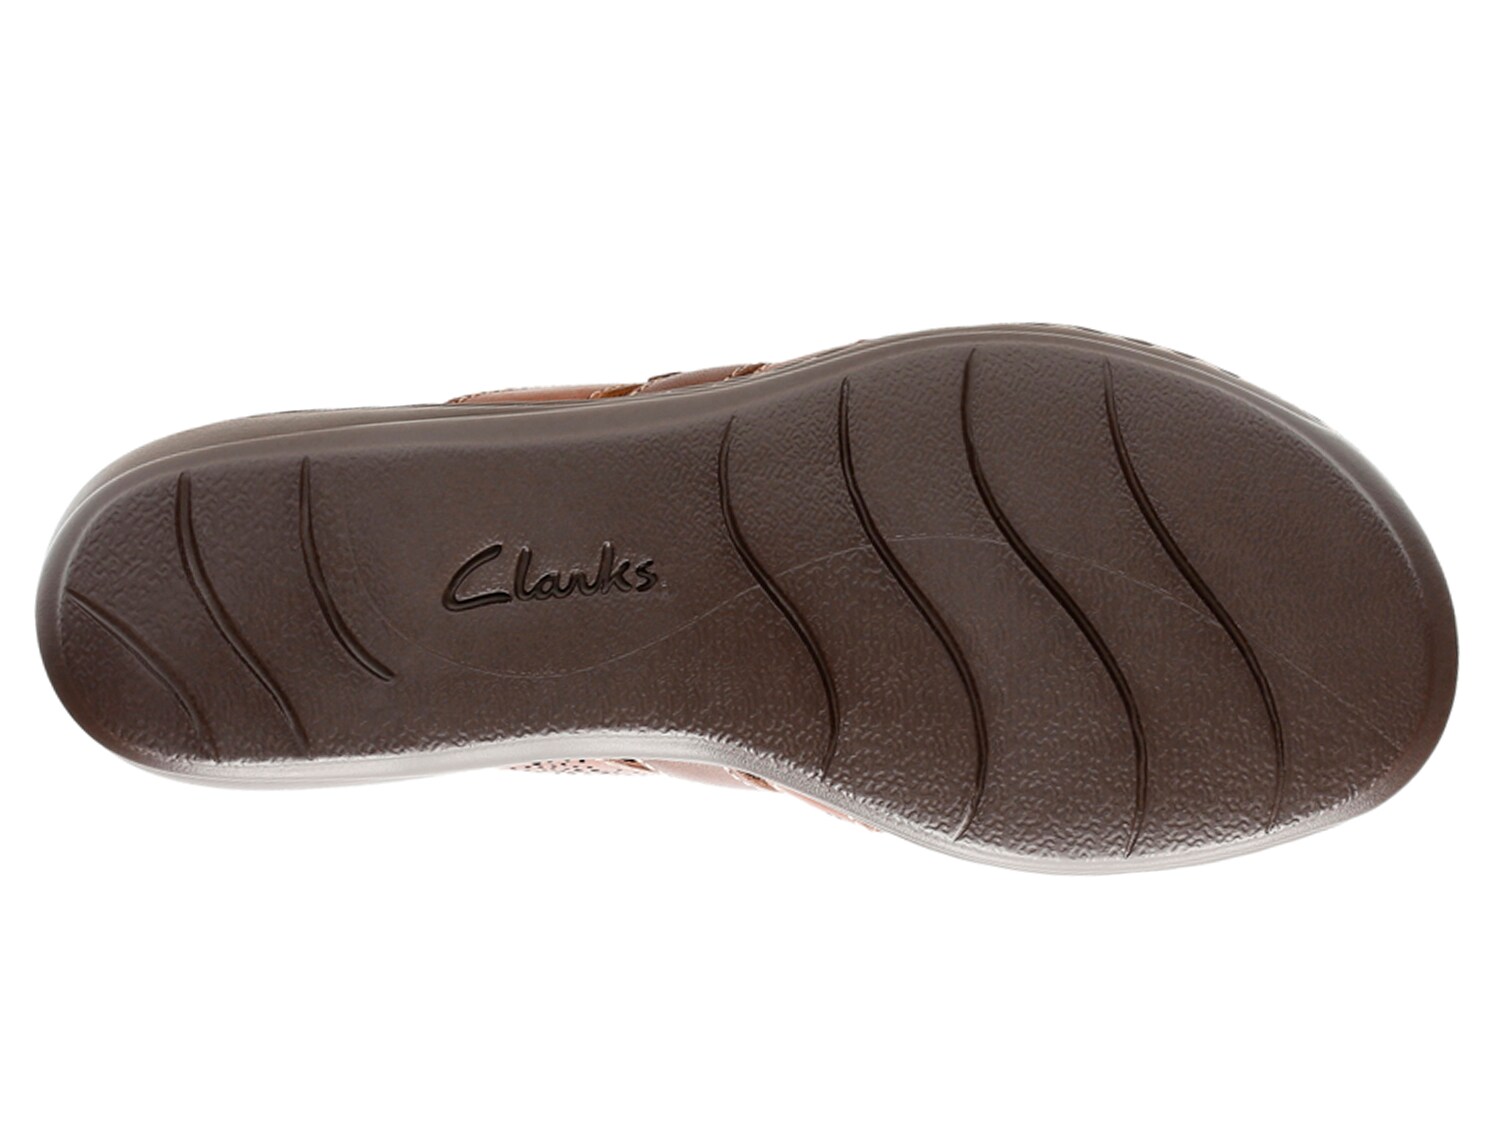 clarks leisa field sandals